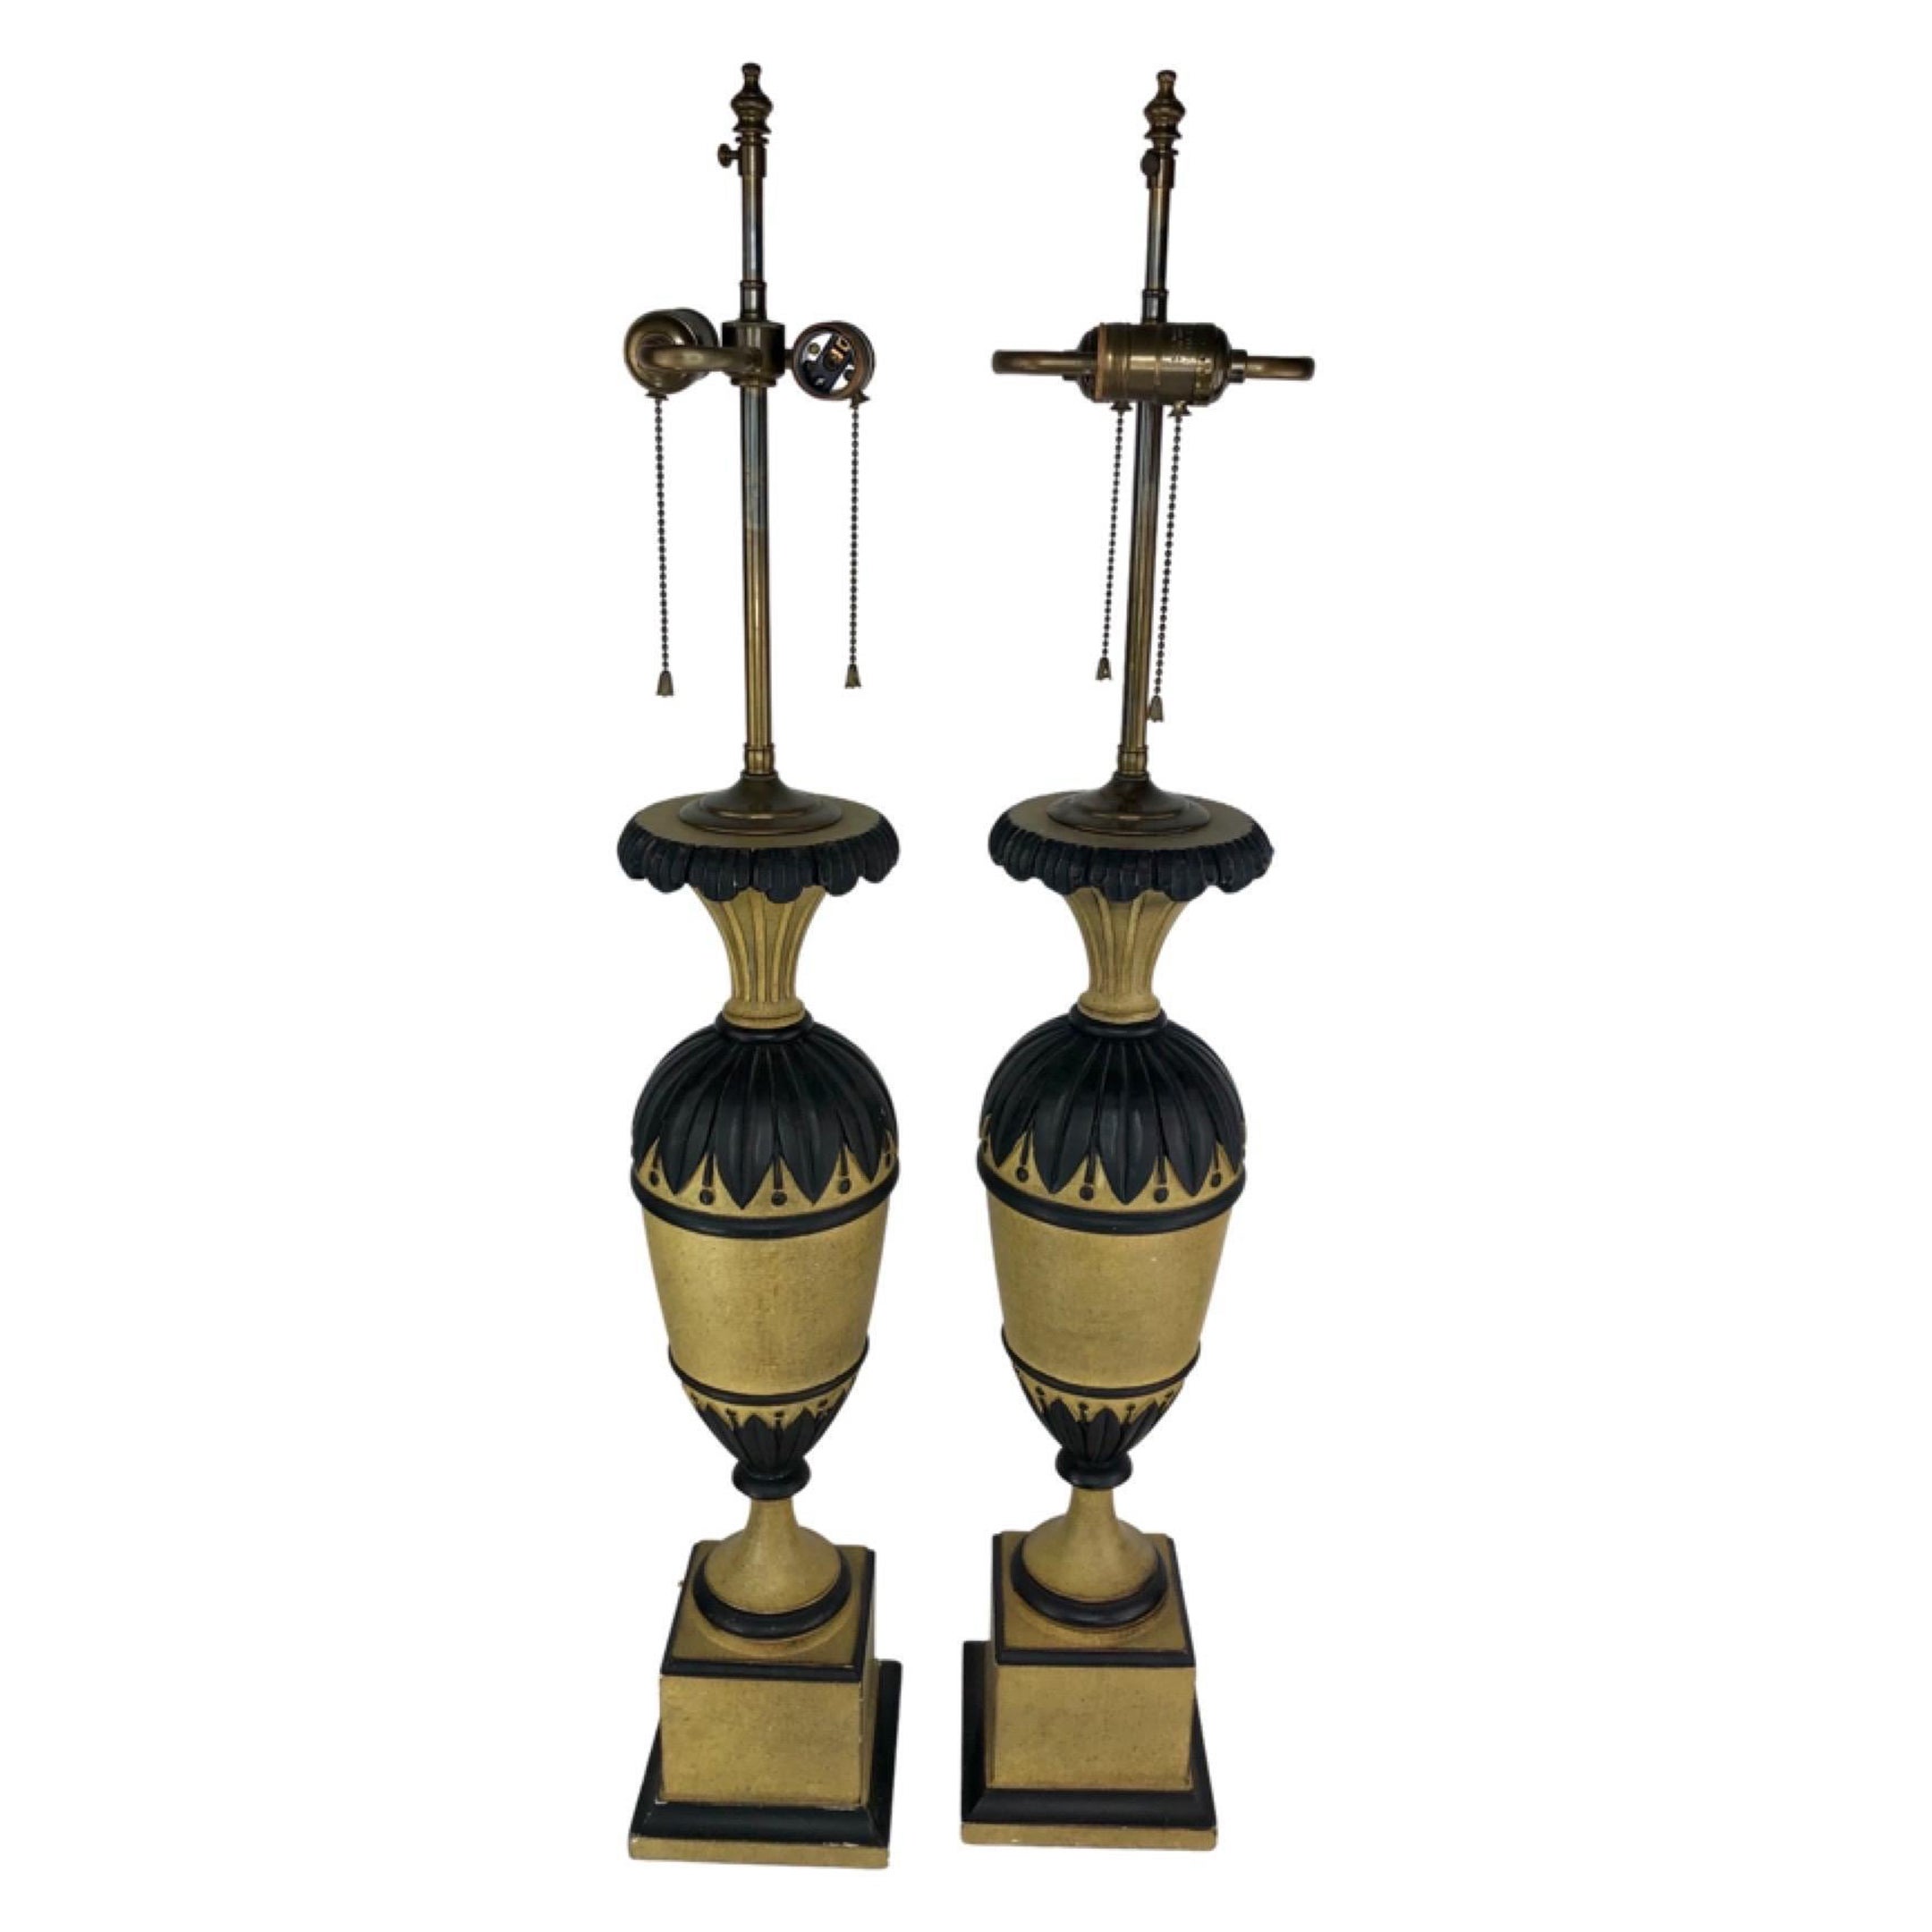 Paar bemalte, geschnitzte Vintage-Lampen in Urnenform aus Holz